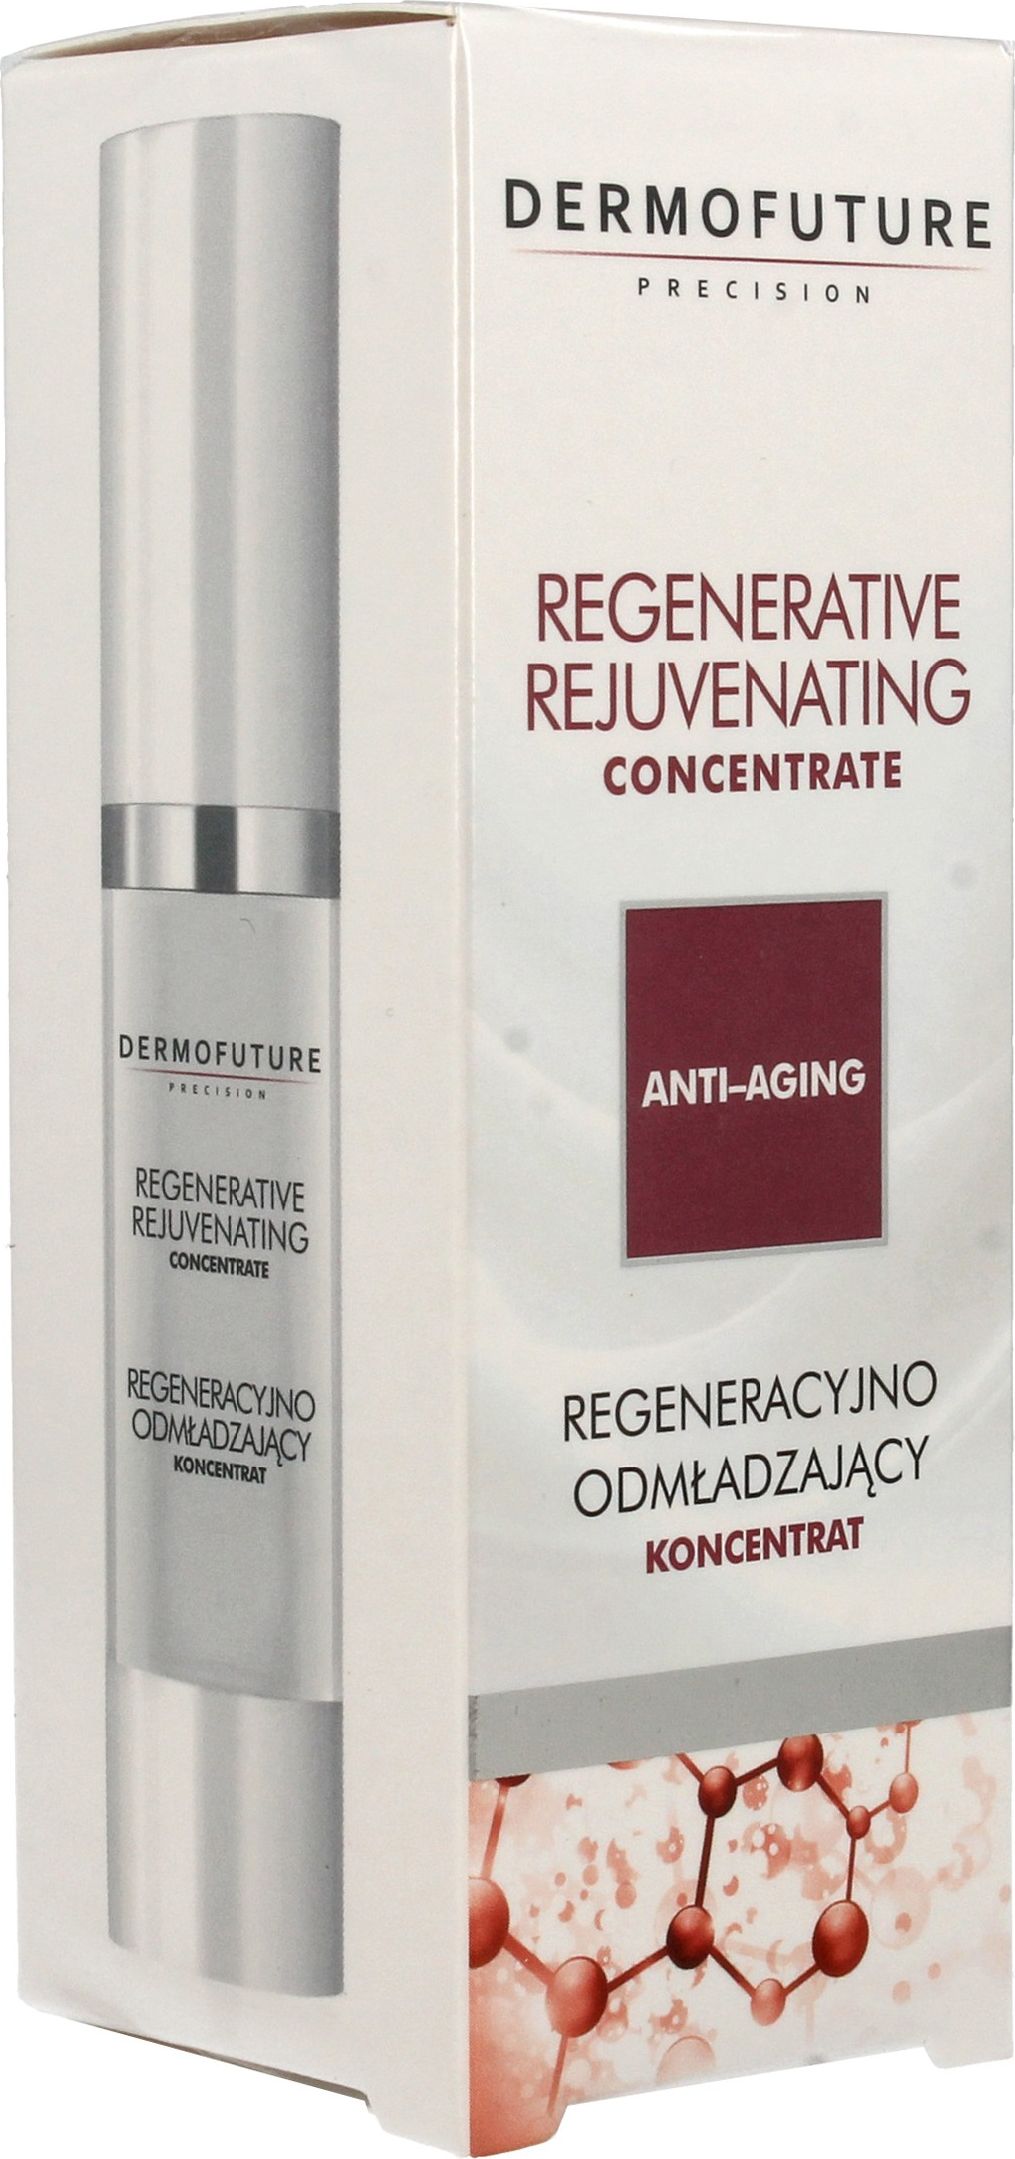 Dermofuture Precision Anti-Aging concentrat regenerant si intineritor 30 ml